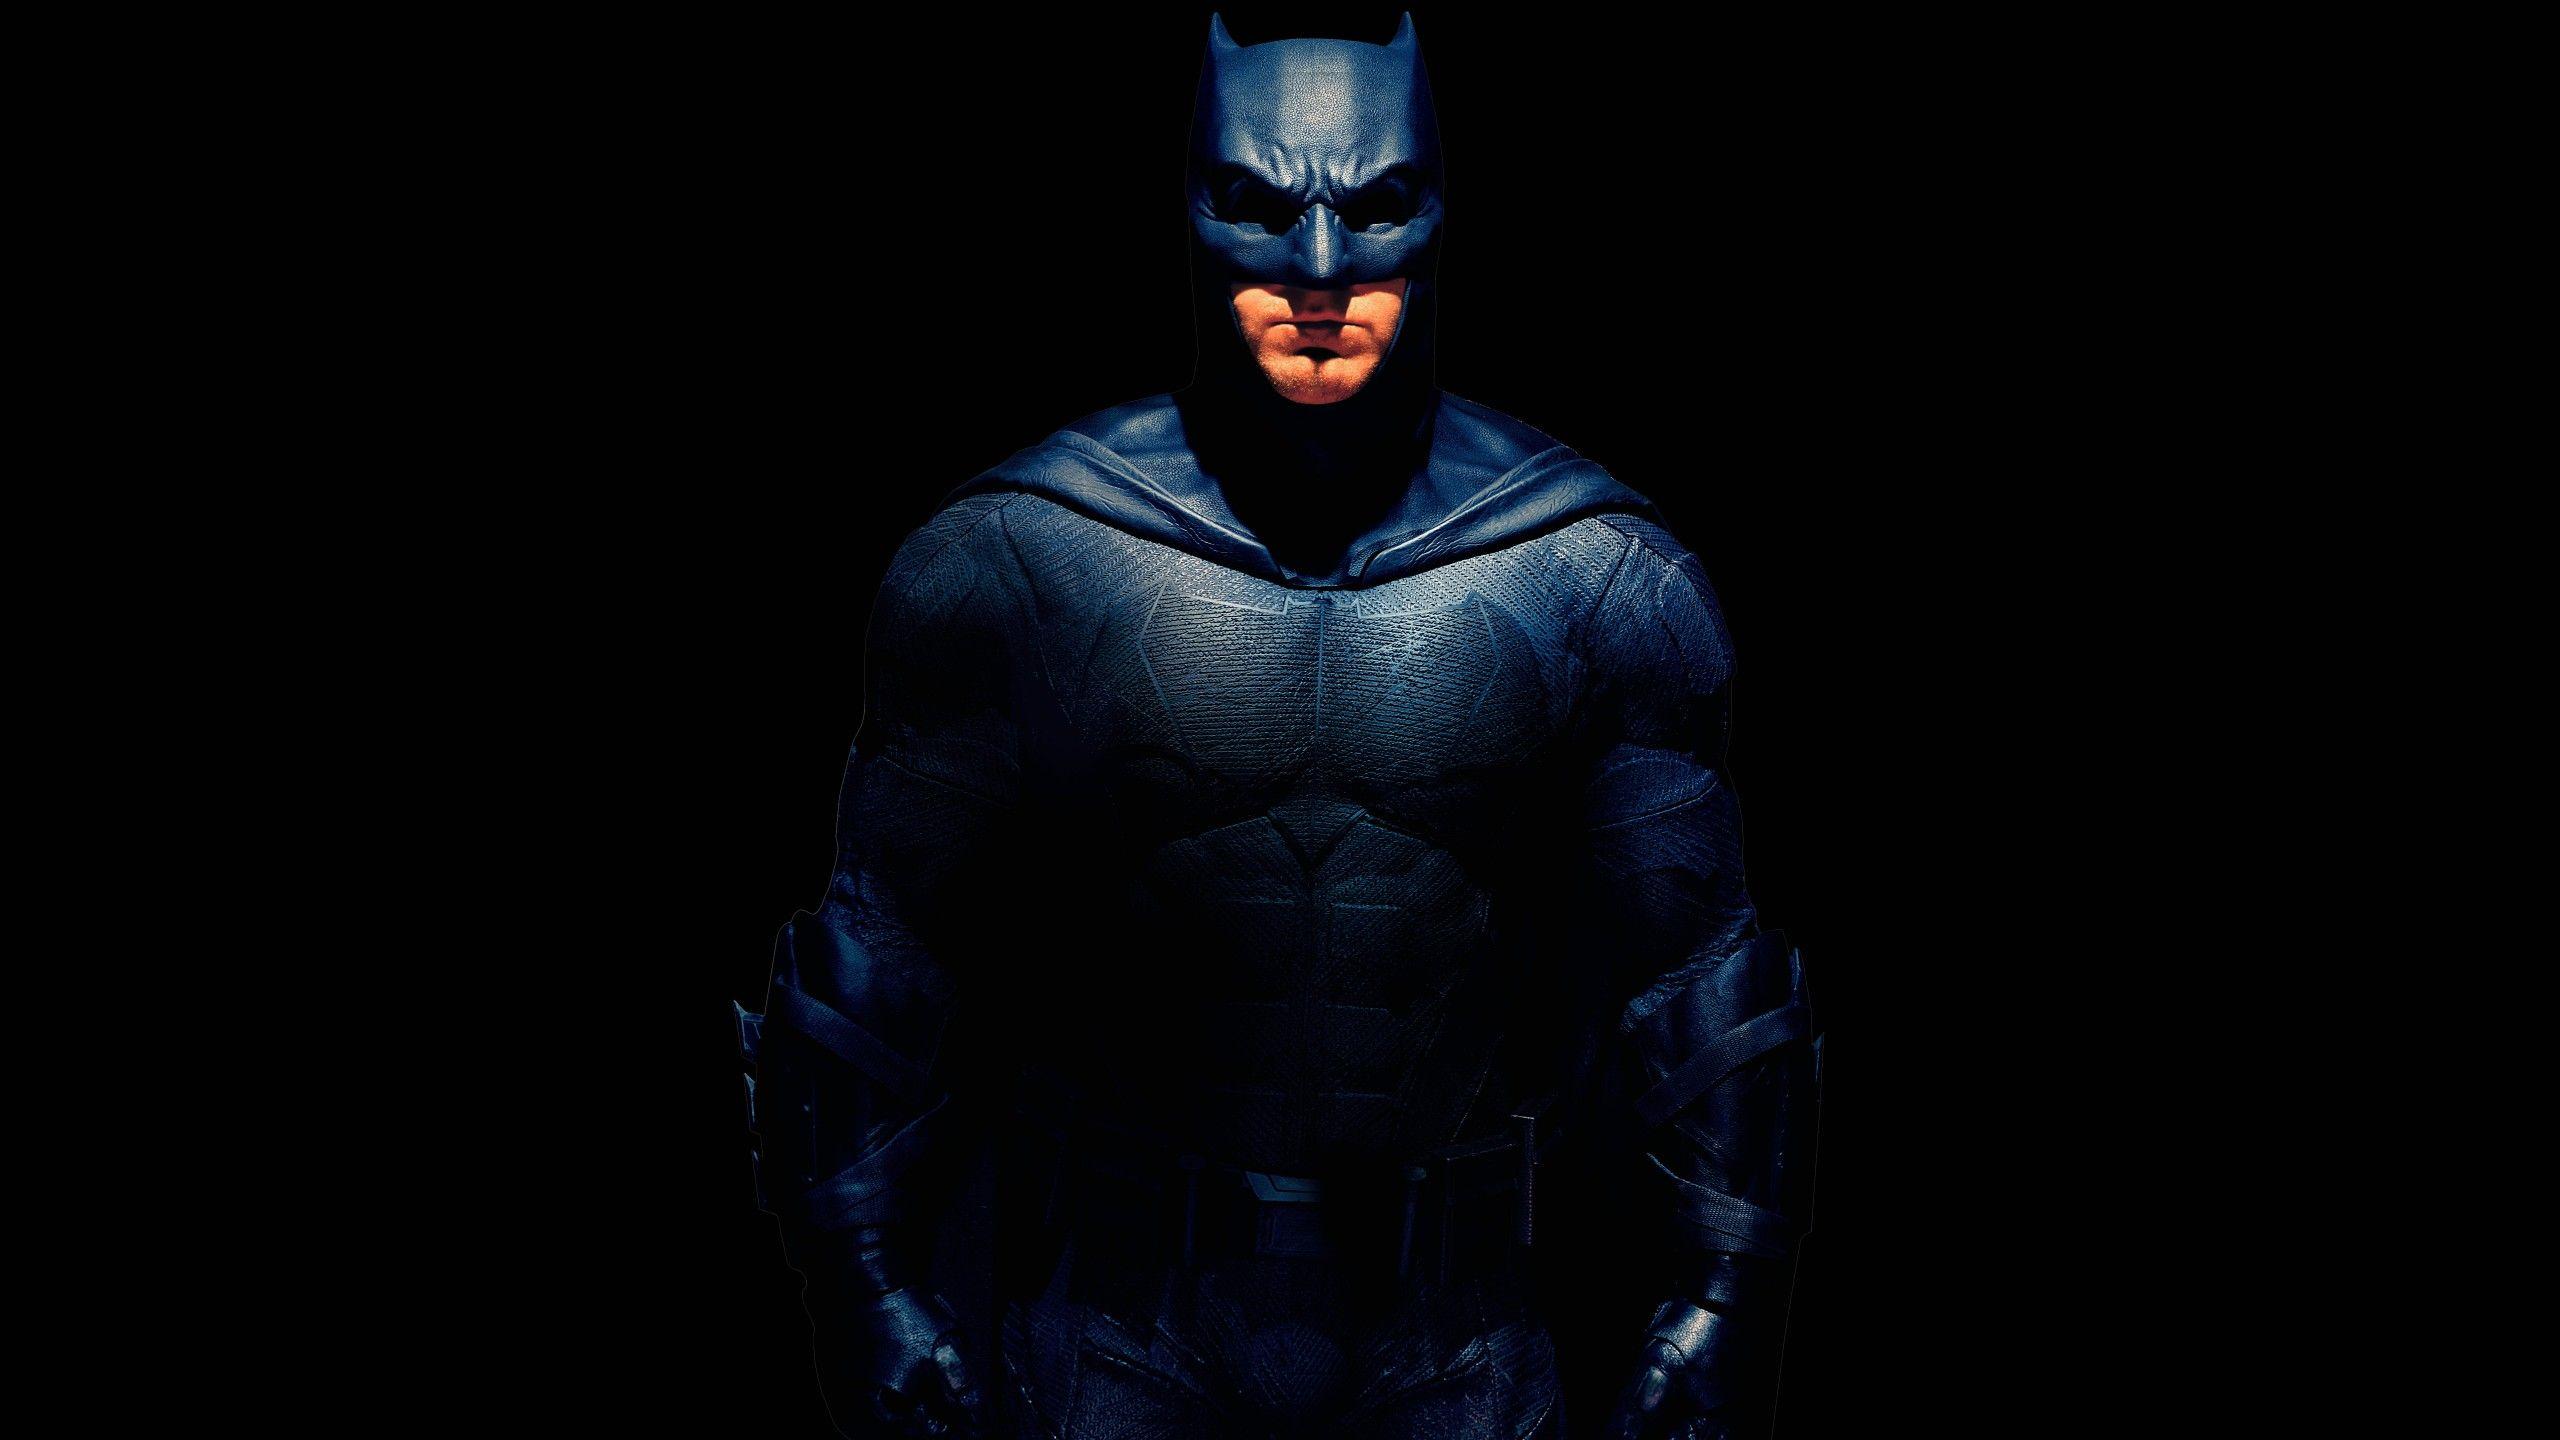 Wallpaper Batman, Ben Affleck, Justice League, 4K, 8K, Movies